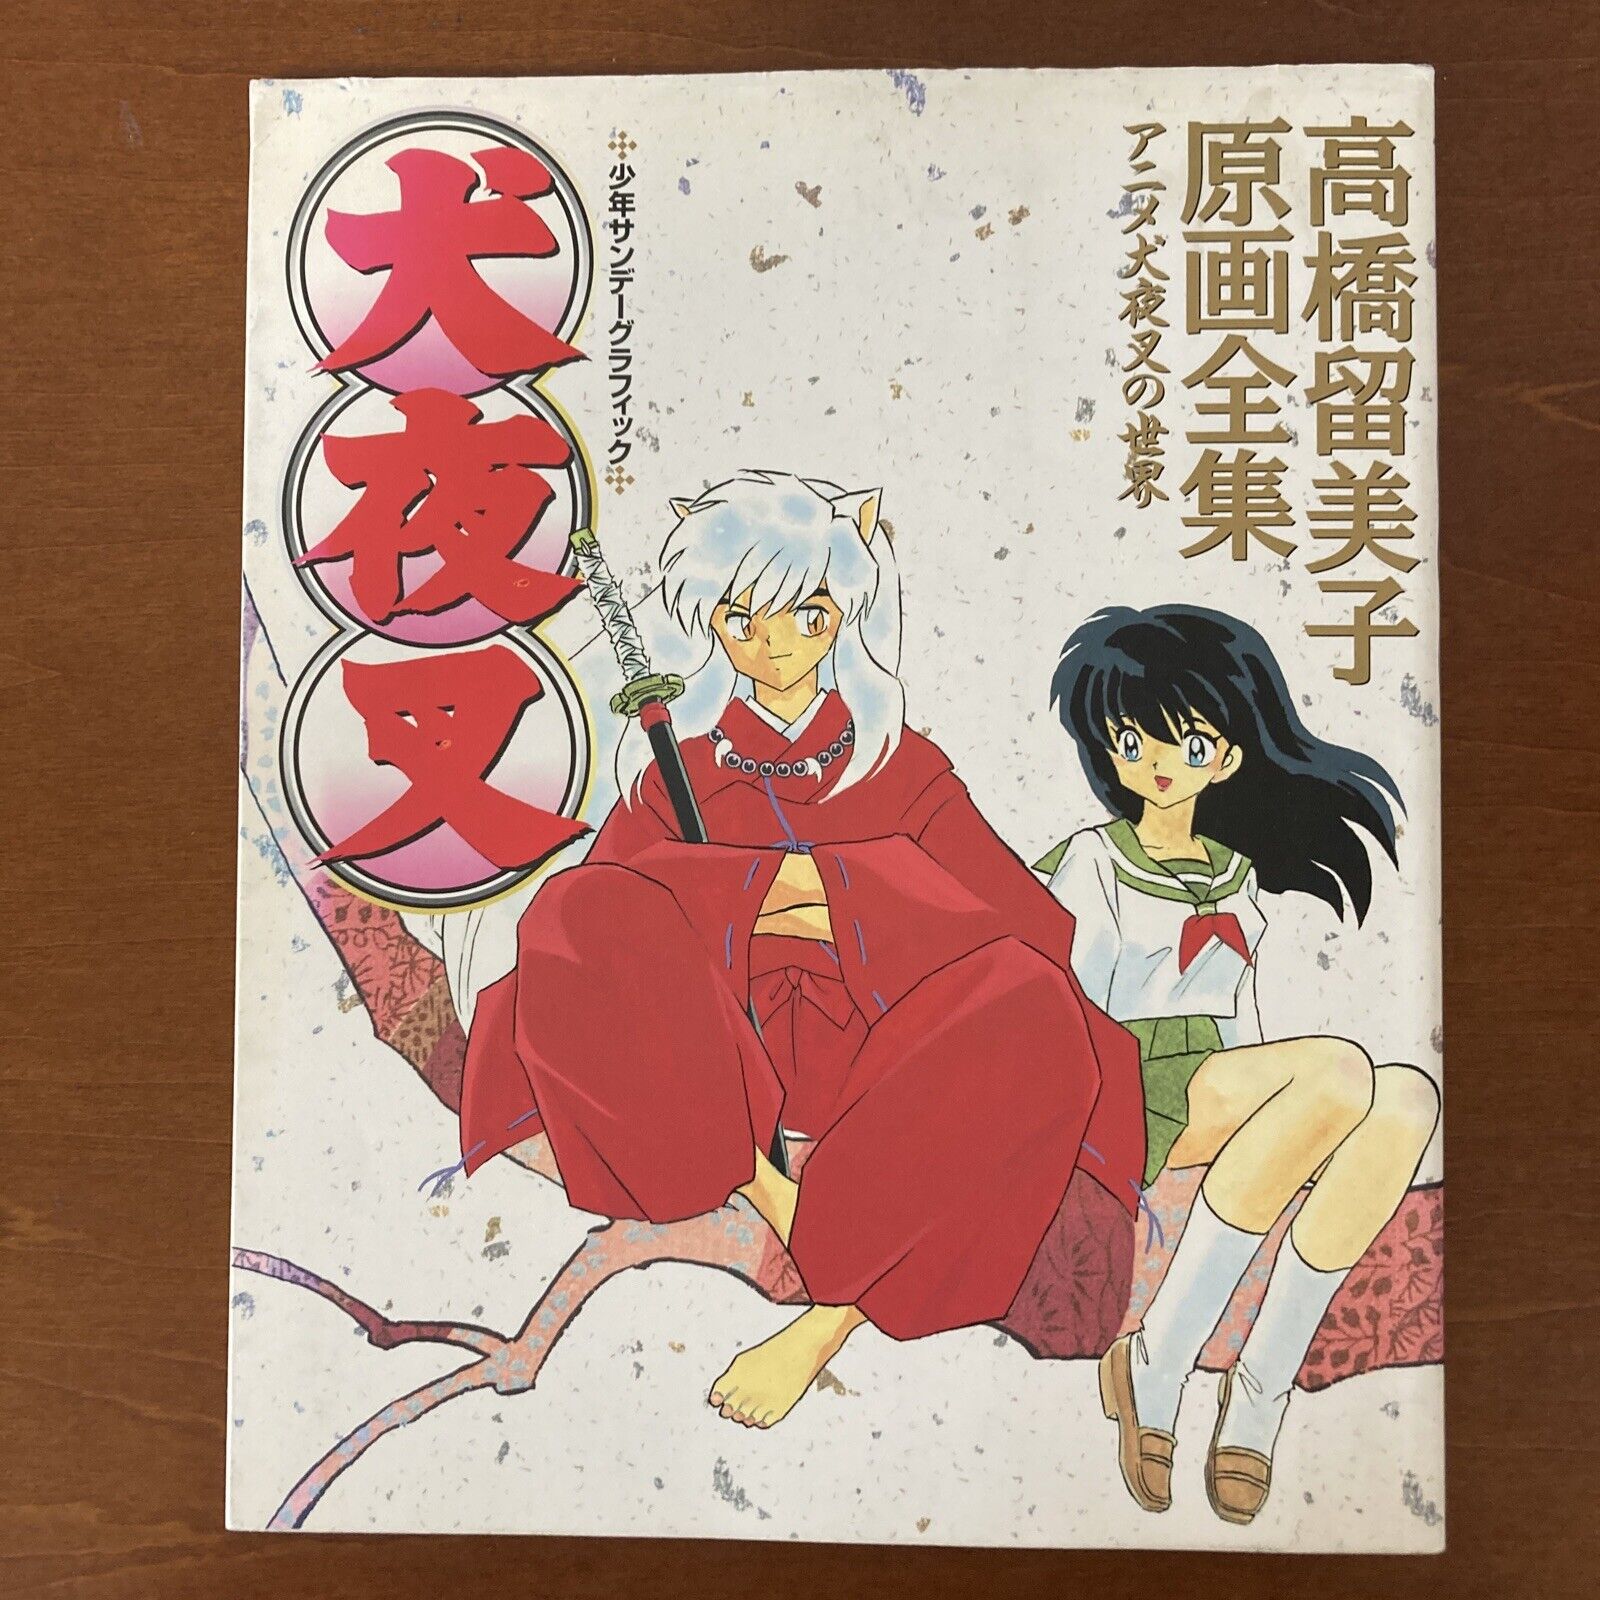 Inuyasha Art Book Rumiko Takahashi Illustration Anime Manga